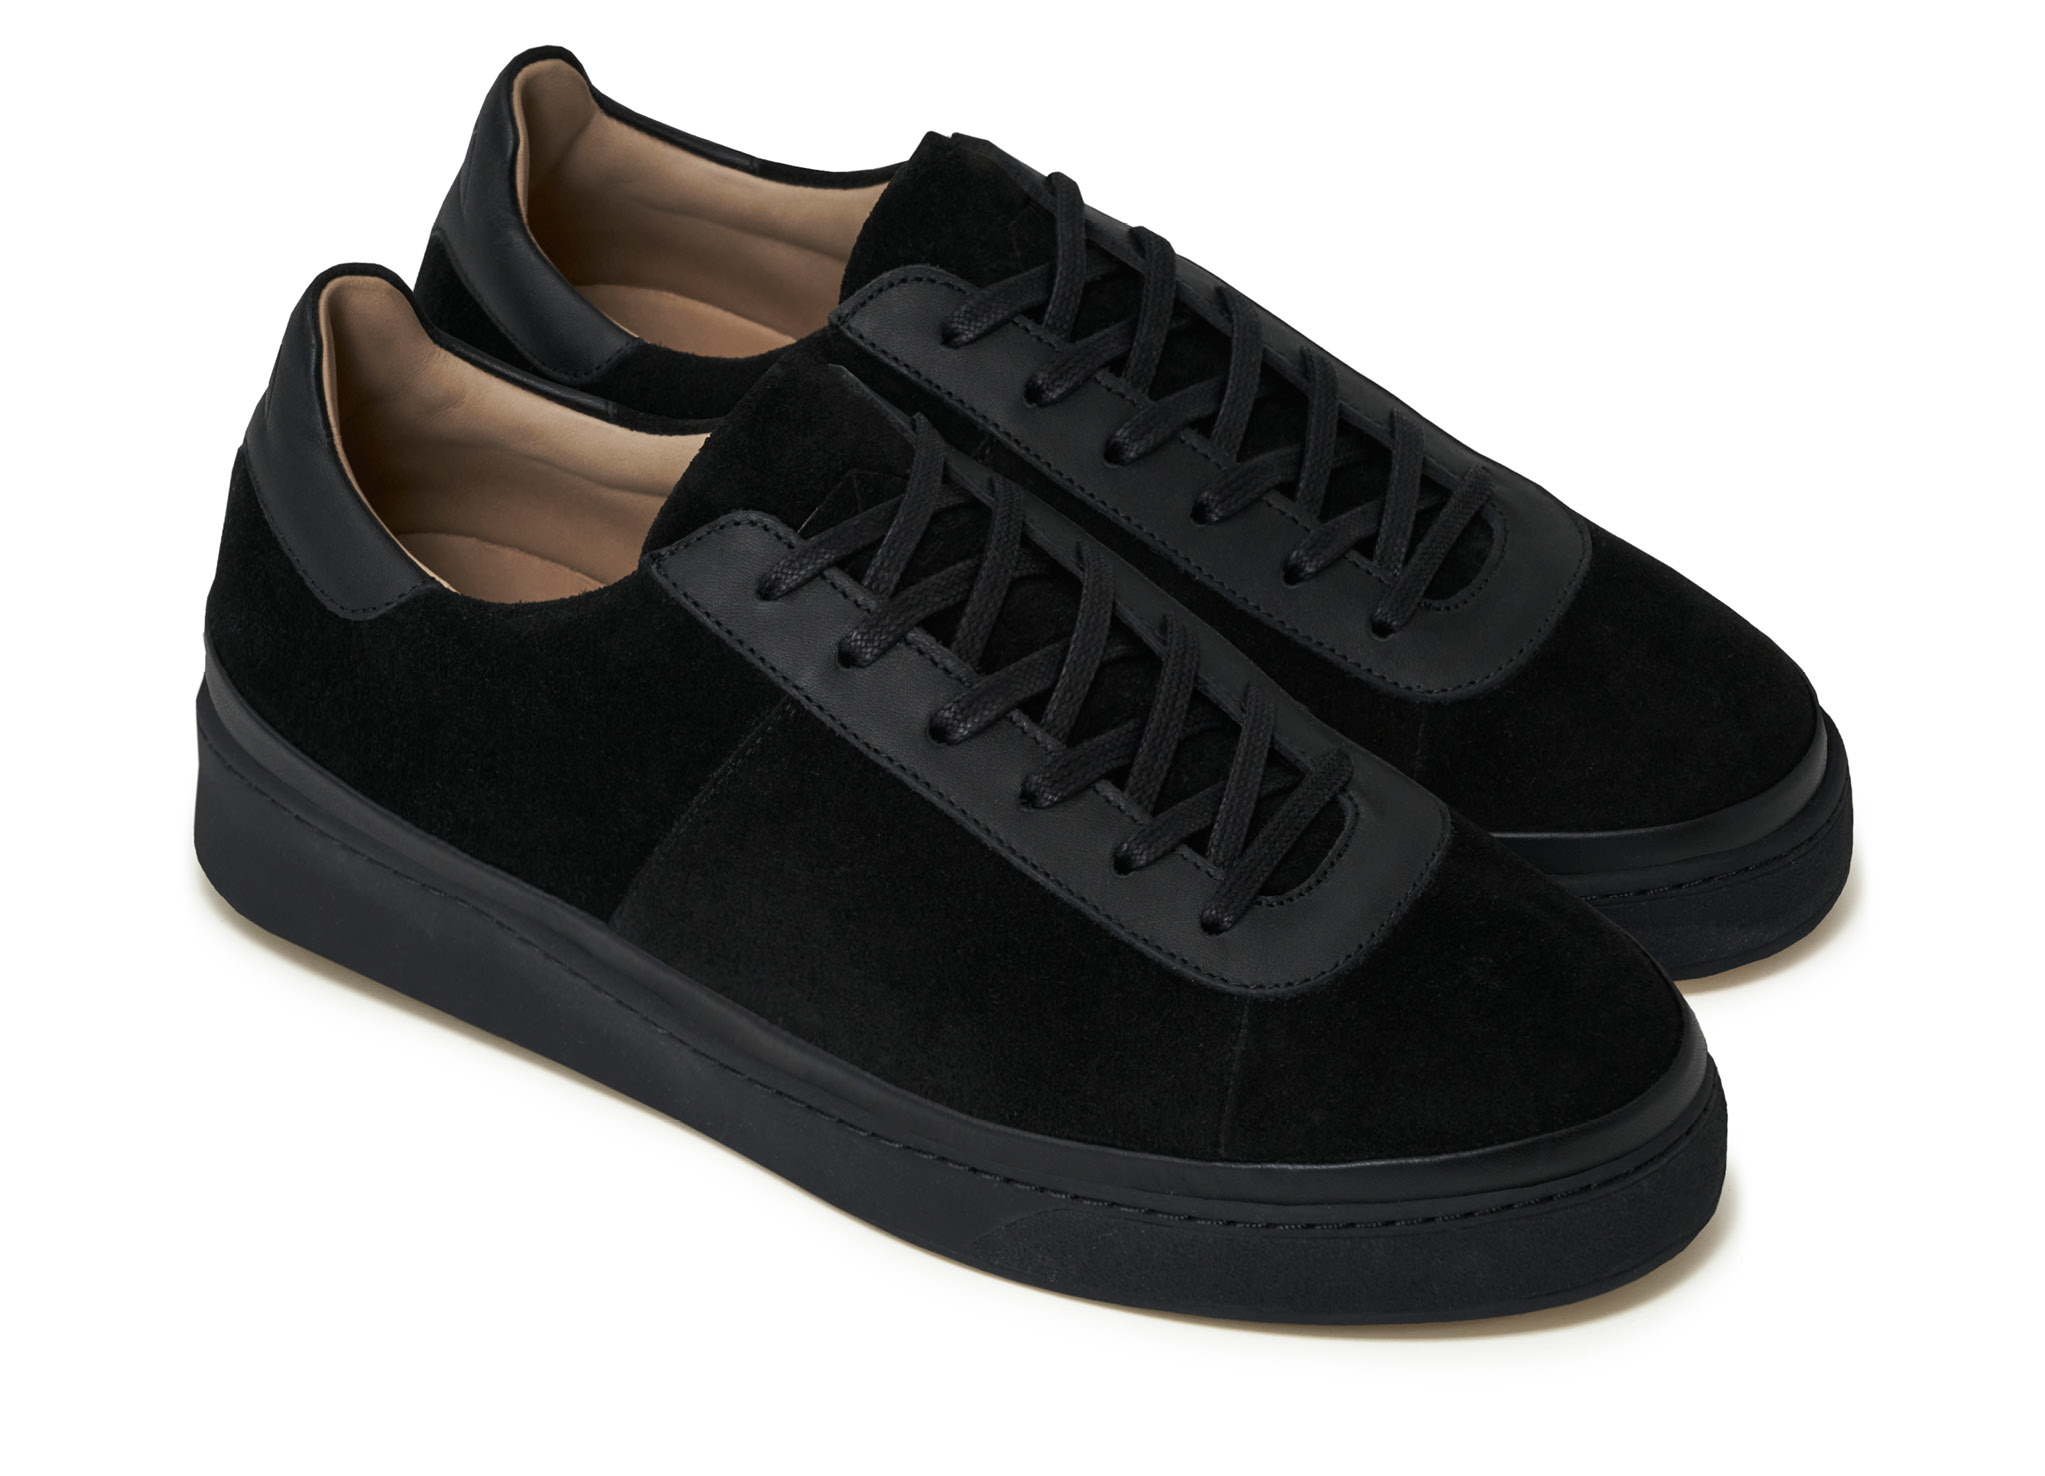 naar voren gebracht sofa Frustrerend Black Sneakers for Men | MULO Shoes | High-quality Italian Suede